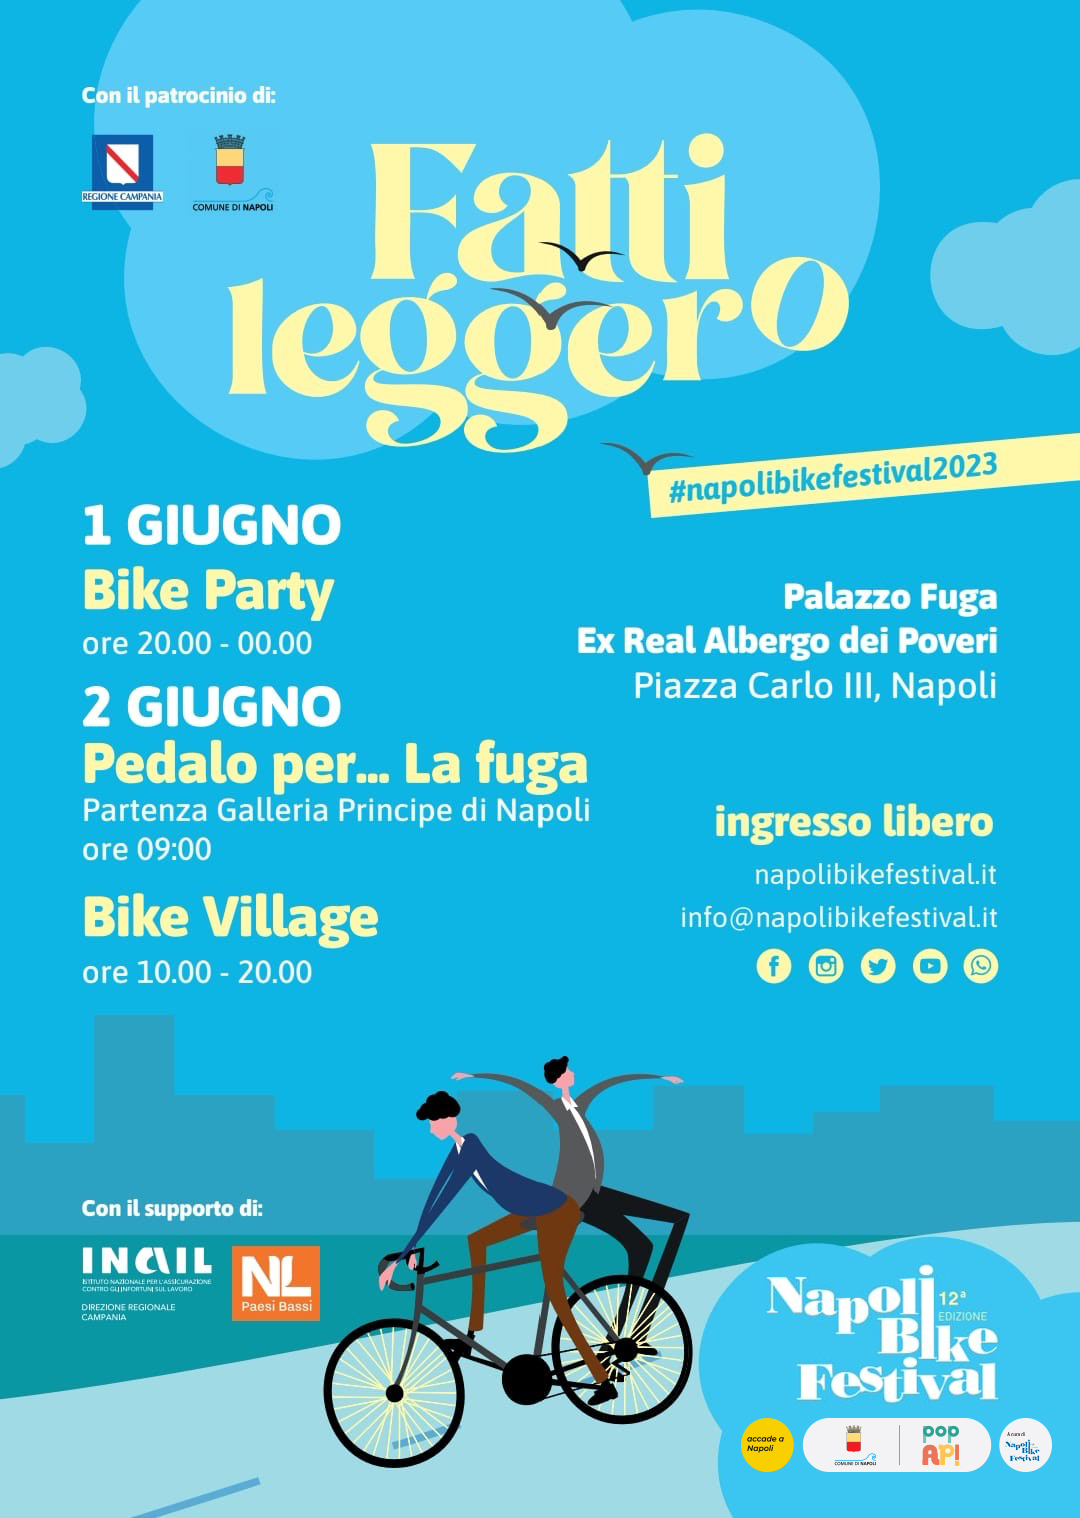 Napoli Bike Festival: l'evento si terrà l’1 e 2 giugno e il tema sarà “Fatti Leggero”